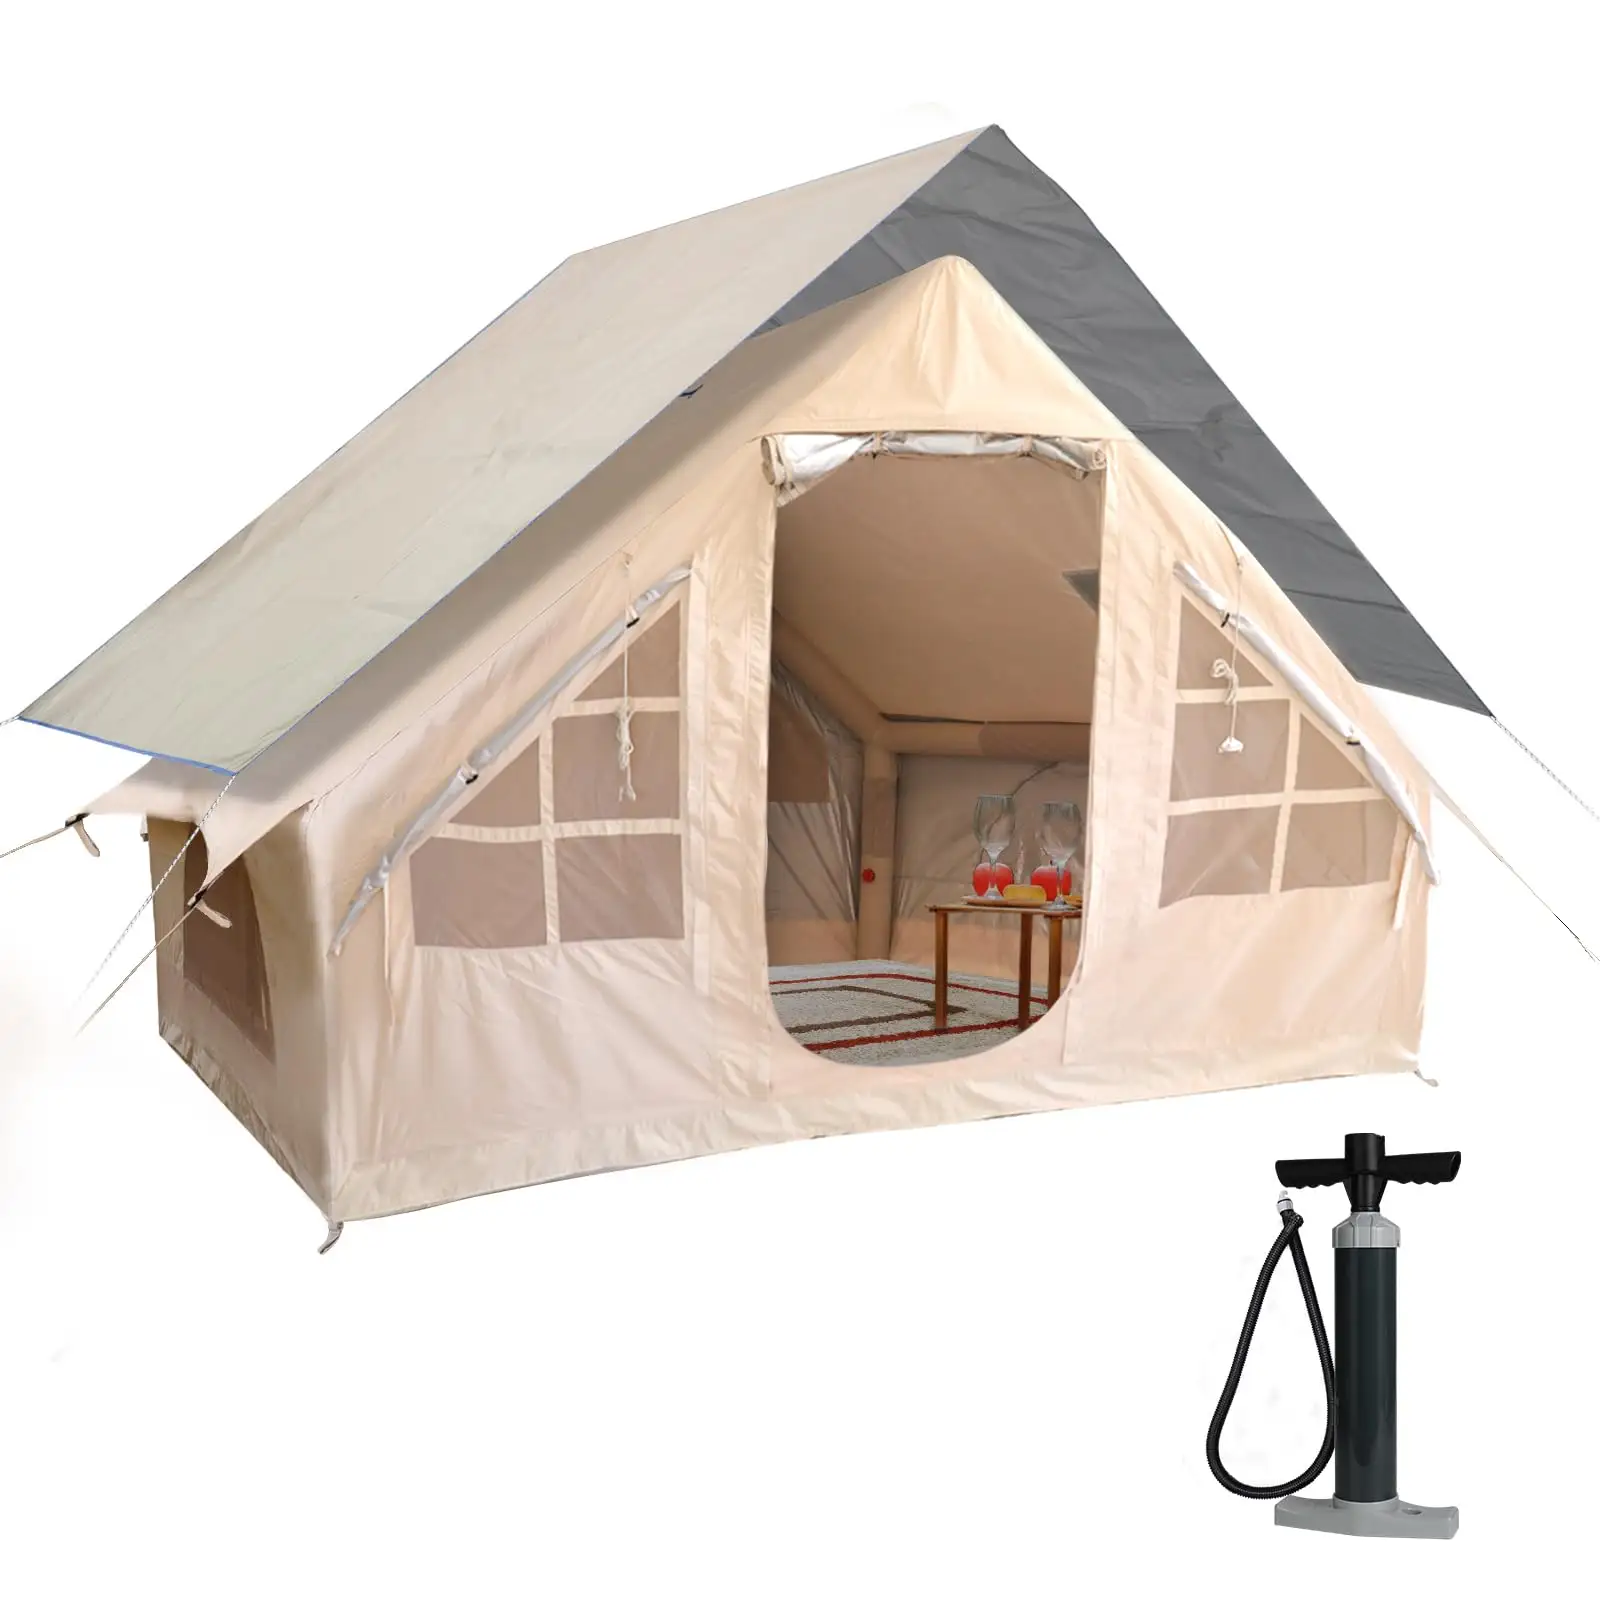 제조 업체 옥스포드 직물 야외 풍선 집 텐트 방수 사용자 정의 럭셔리 glamping 풍선 텐트 야외 캠핑